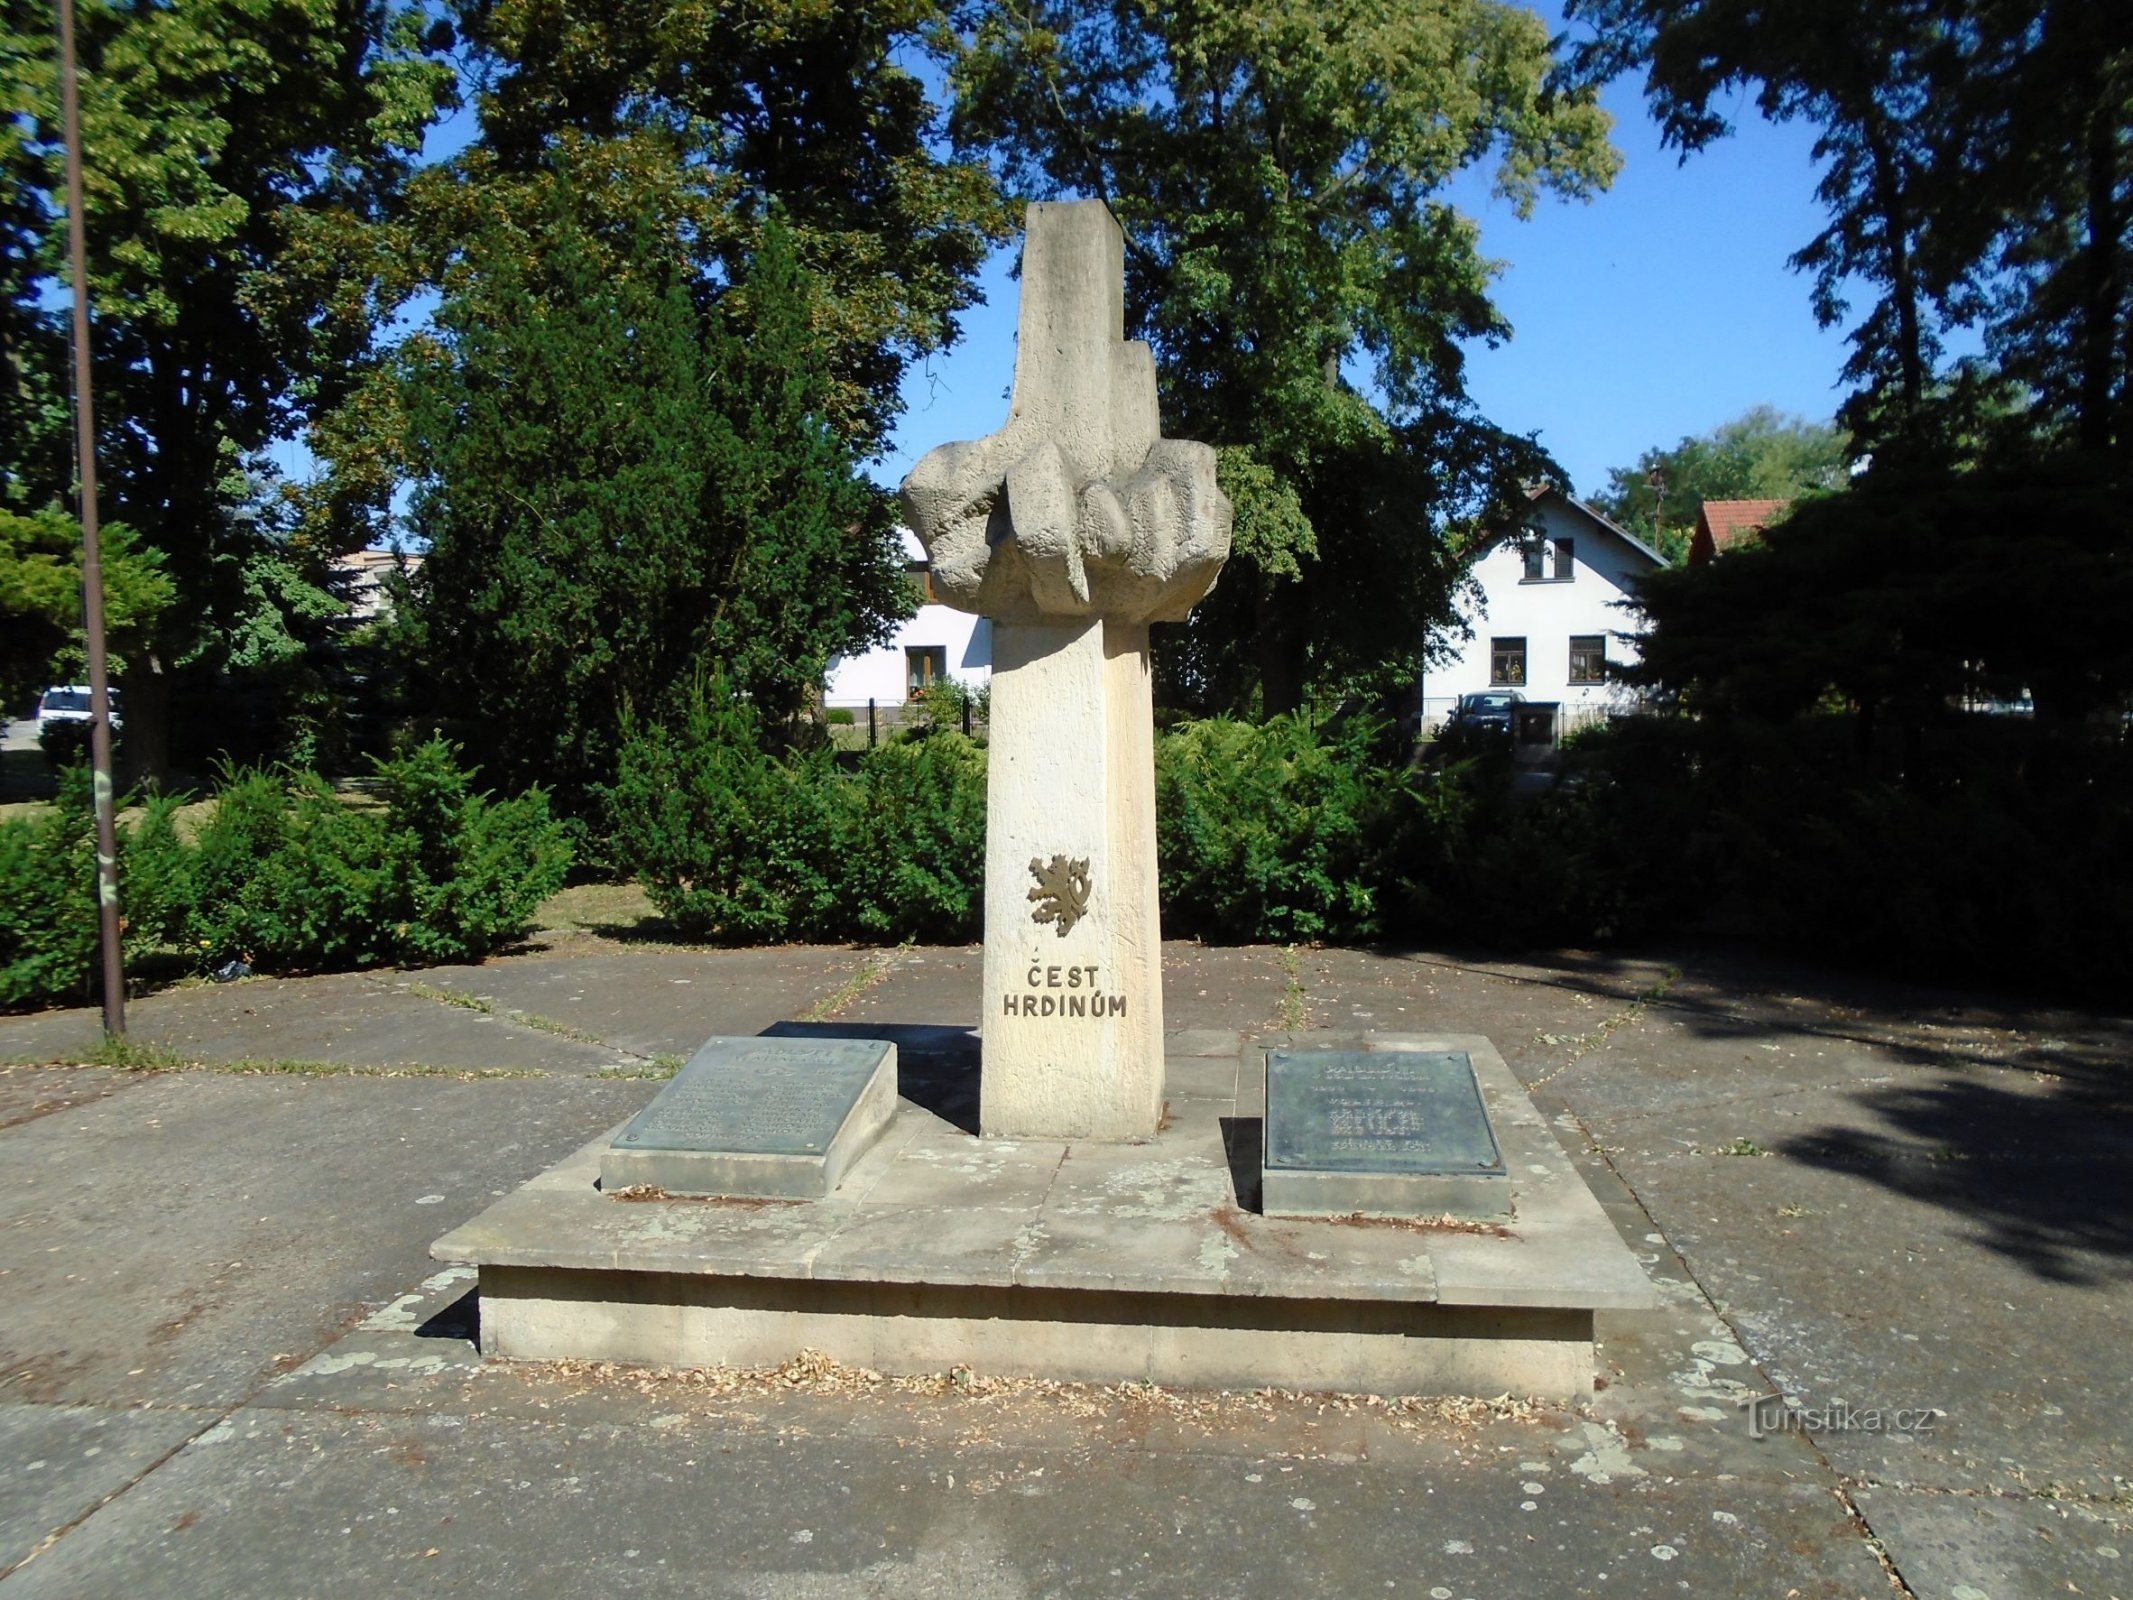 Đài tưởng niệm các nạn nhân của cả hai cuộc chiến tranh thế giới (Opatovice nad Labem, ngày 4.7.2018 tháng XNUMX năm XNUMX)